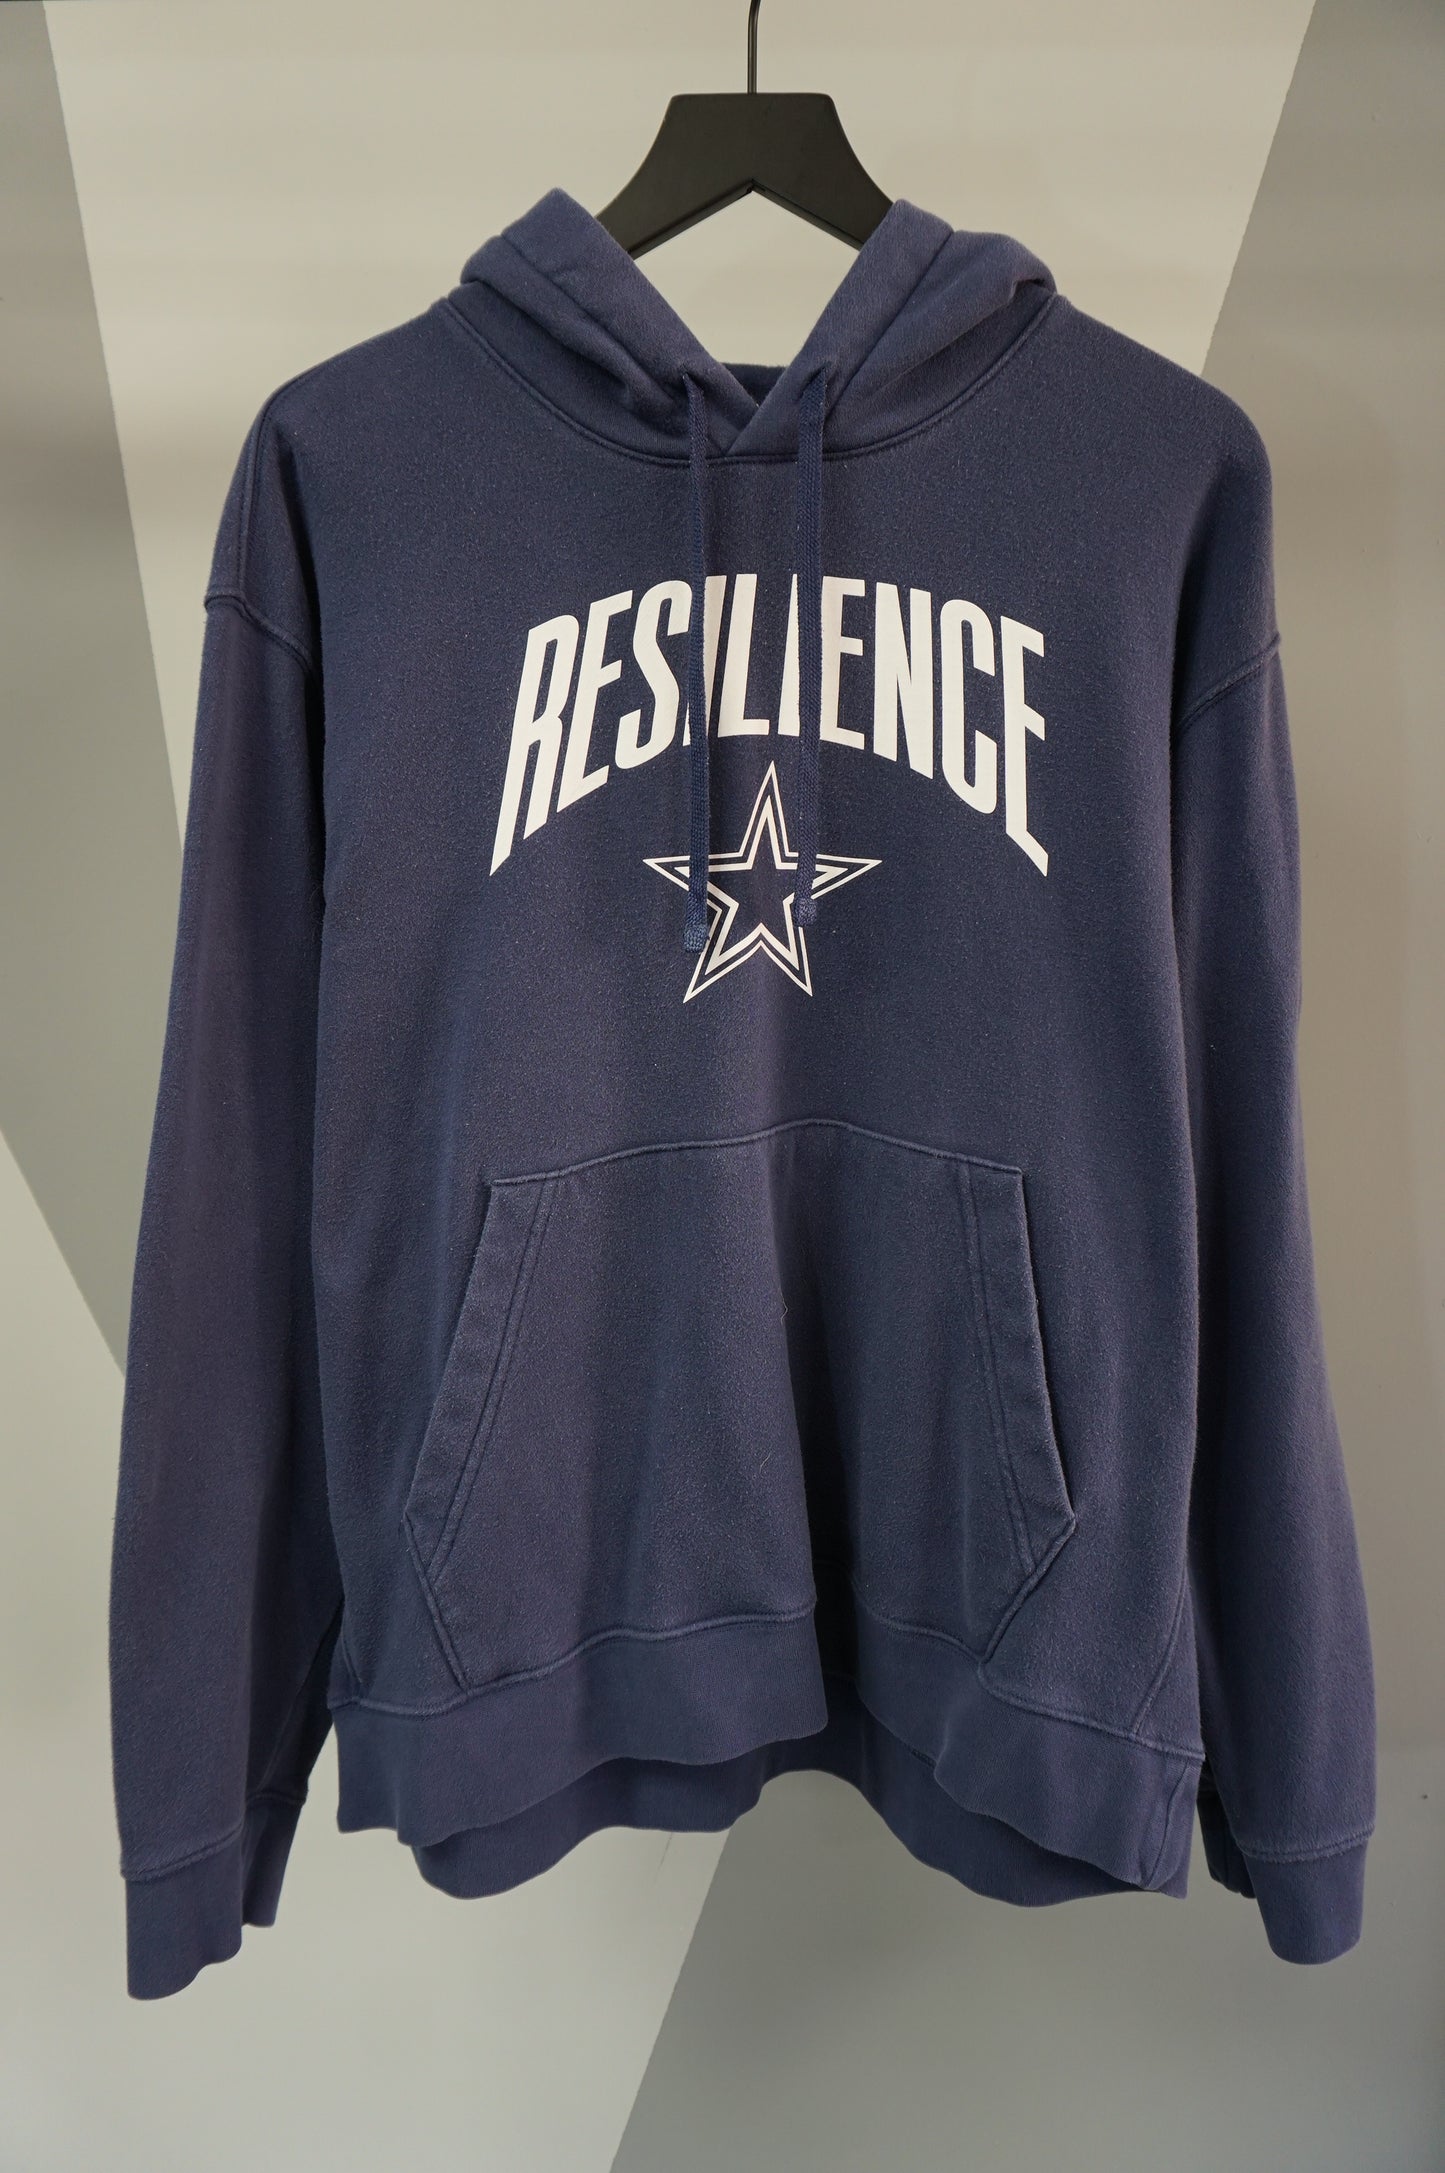 (XL/XXL) Dallas Cowboys Resilience Nike Hoodie